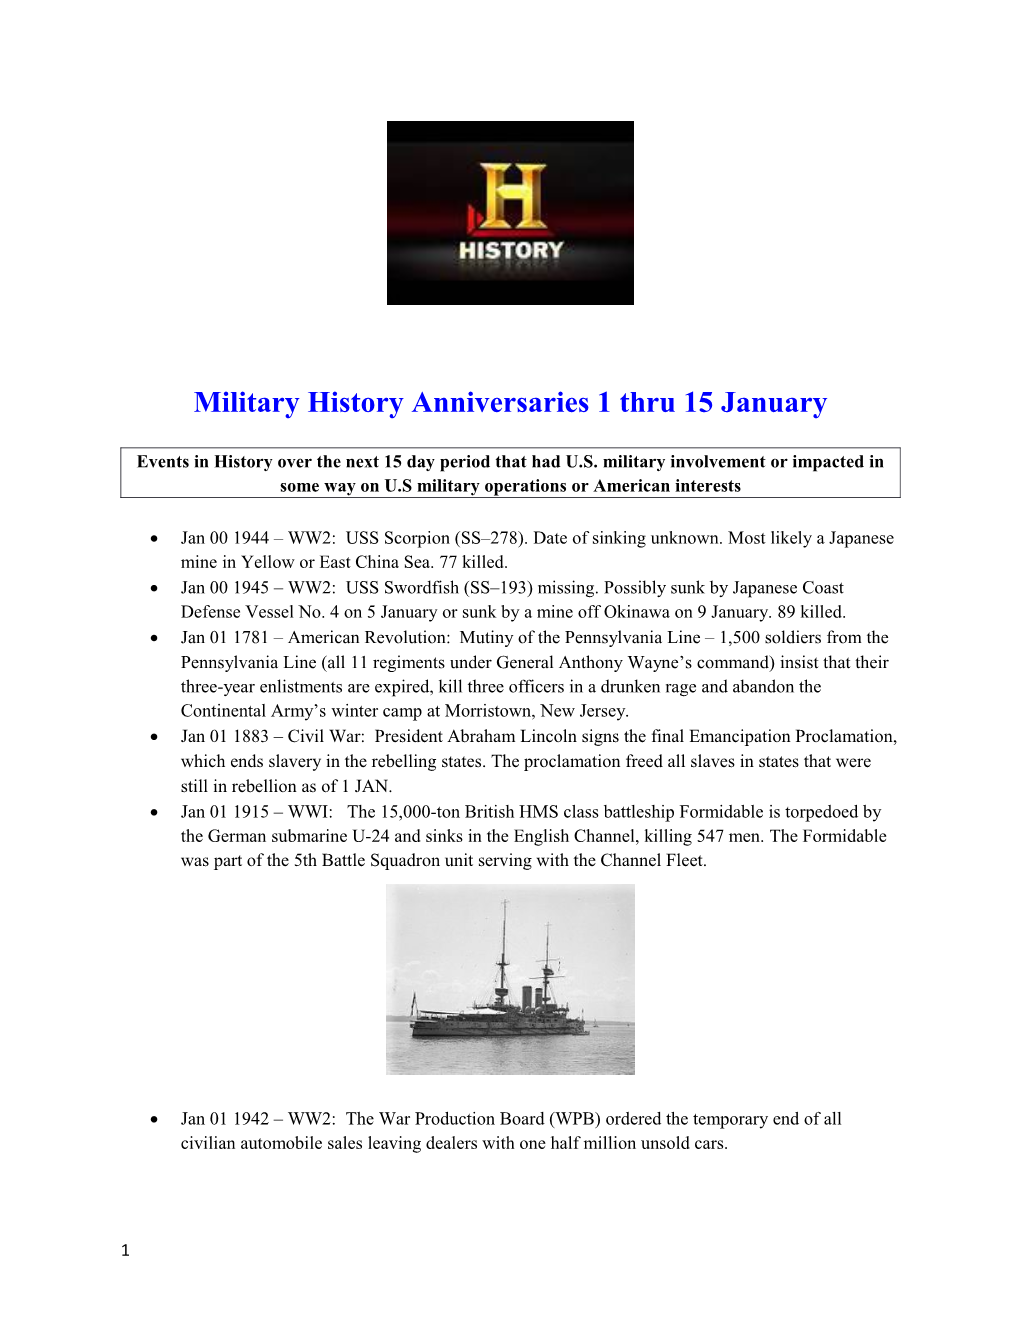 Military History Anniversaries 1 Thru 15 January s1